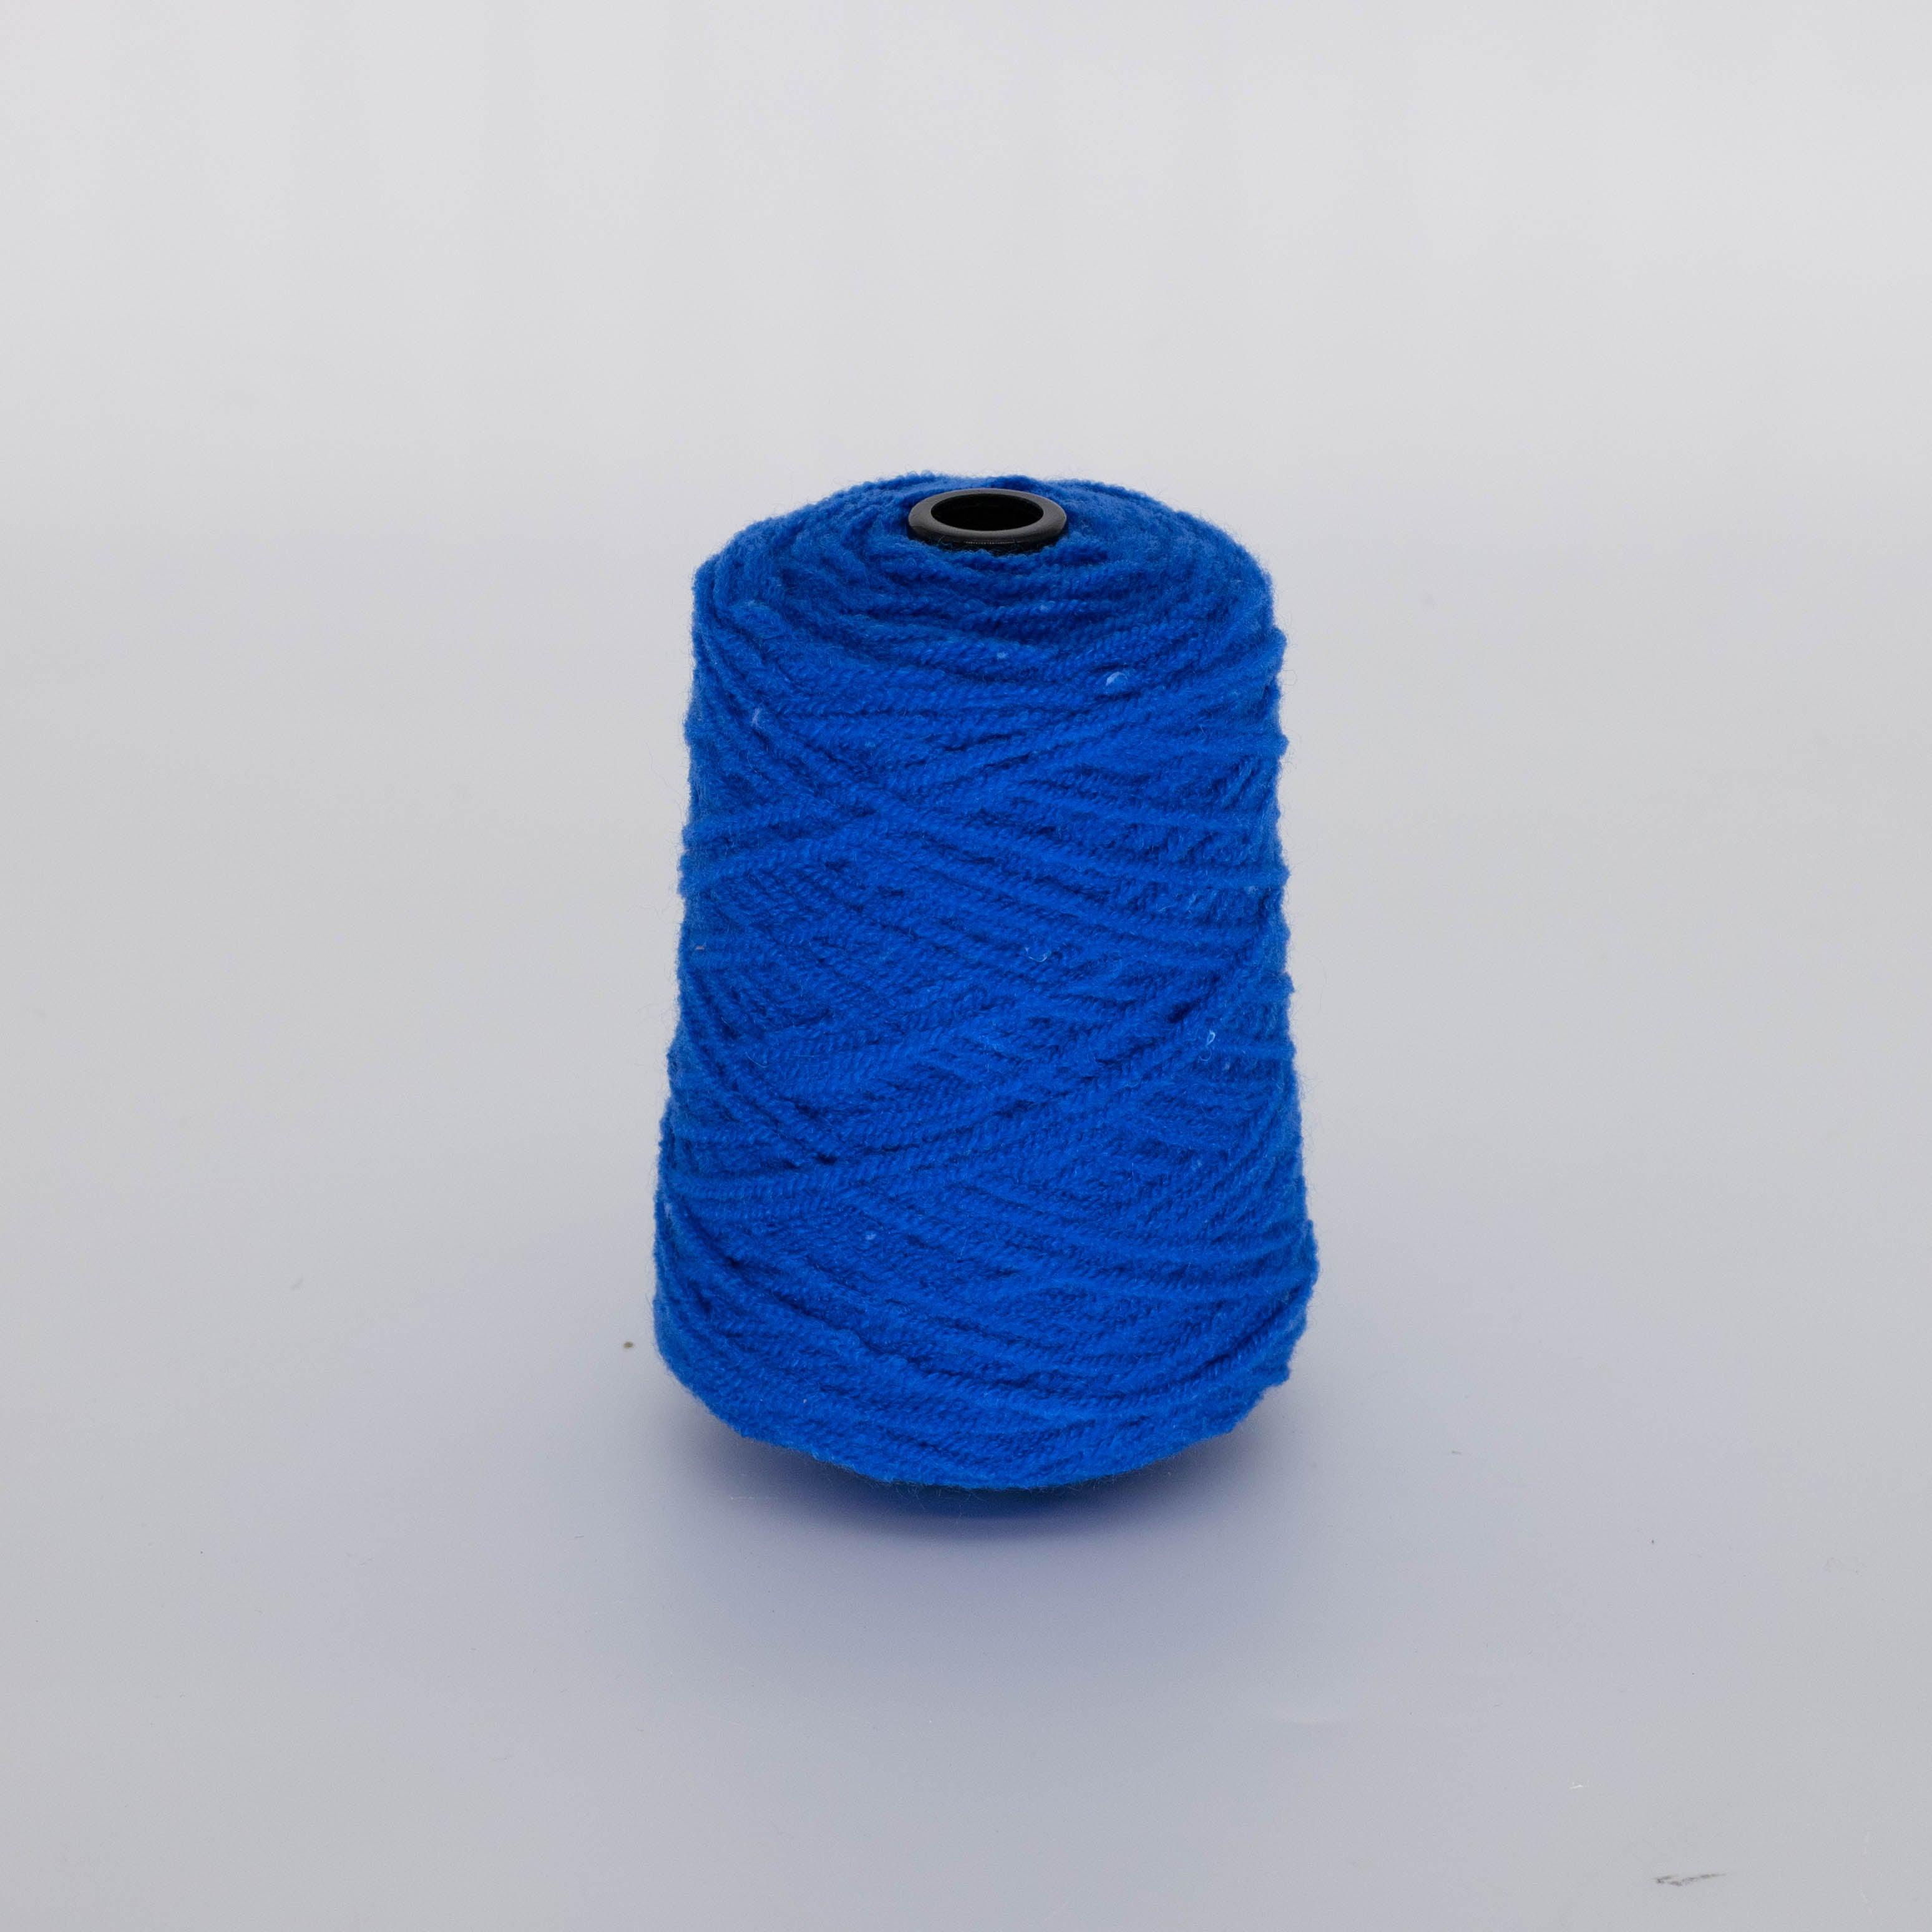 Glowing Blue Acrylic Yarn 3/4.2NM 320 gram - Tuftingshop